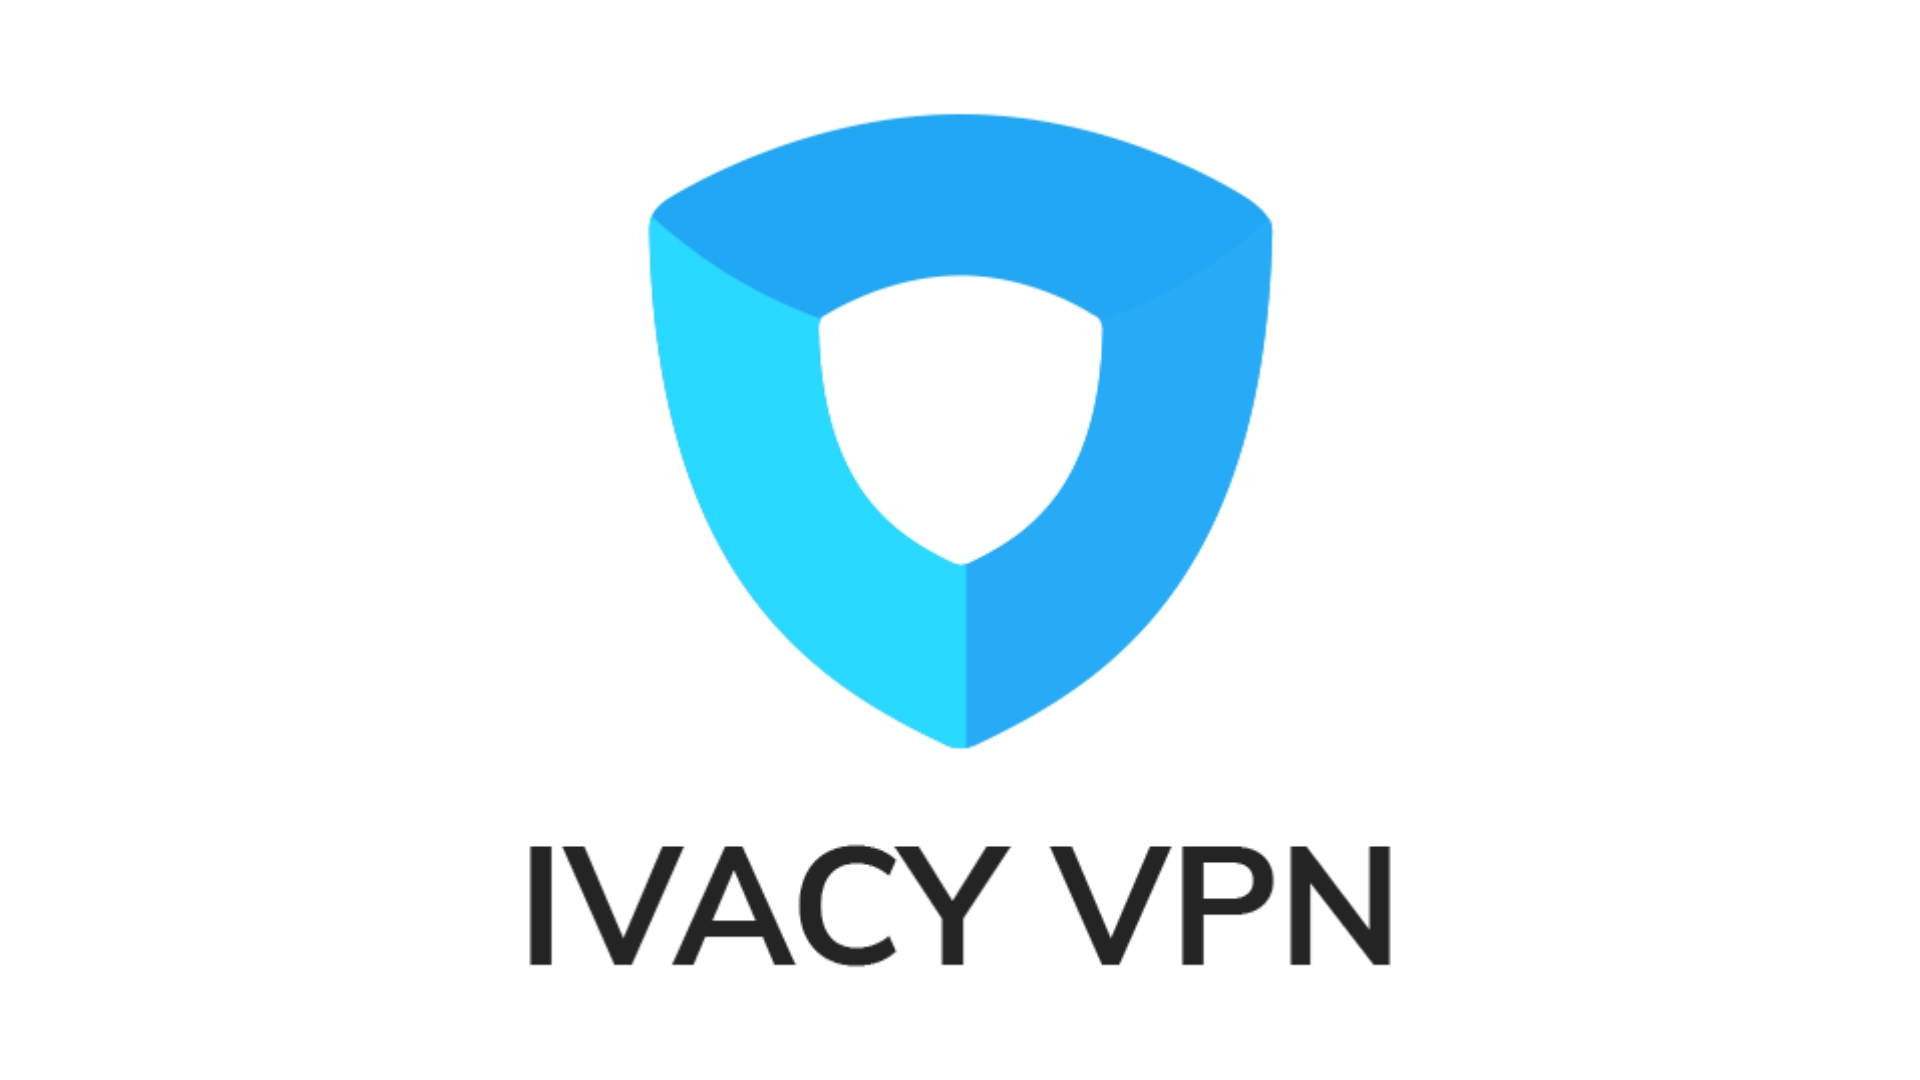 La mejor VPN para Windows 10 - Ivacy VPN.  La imagen muestra su logo sobre un fondo blanco.